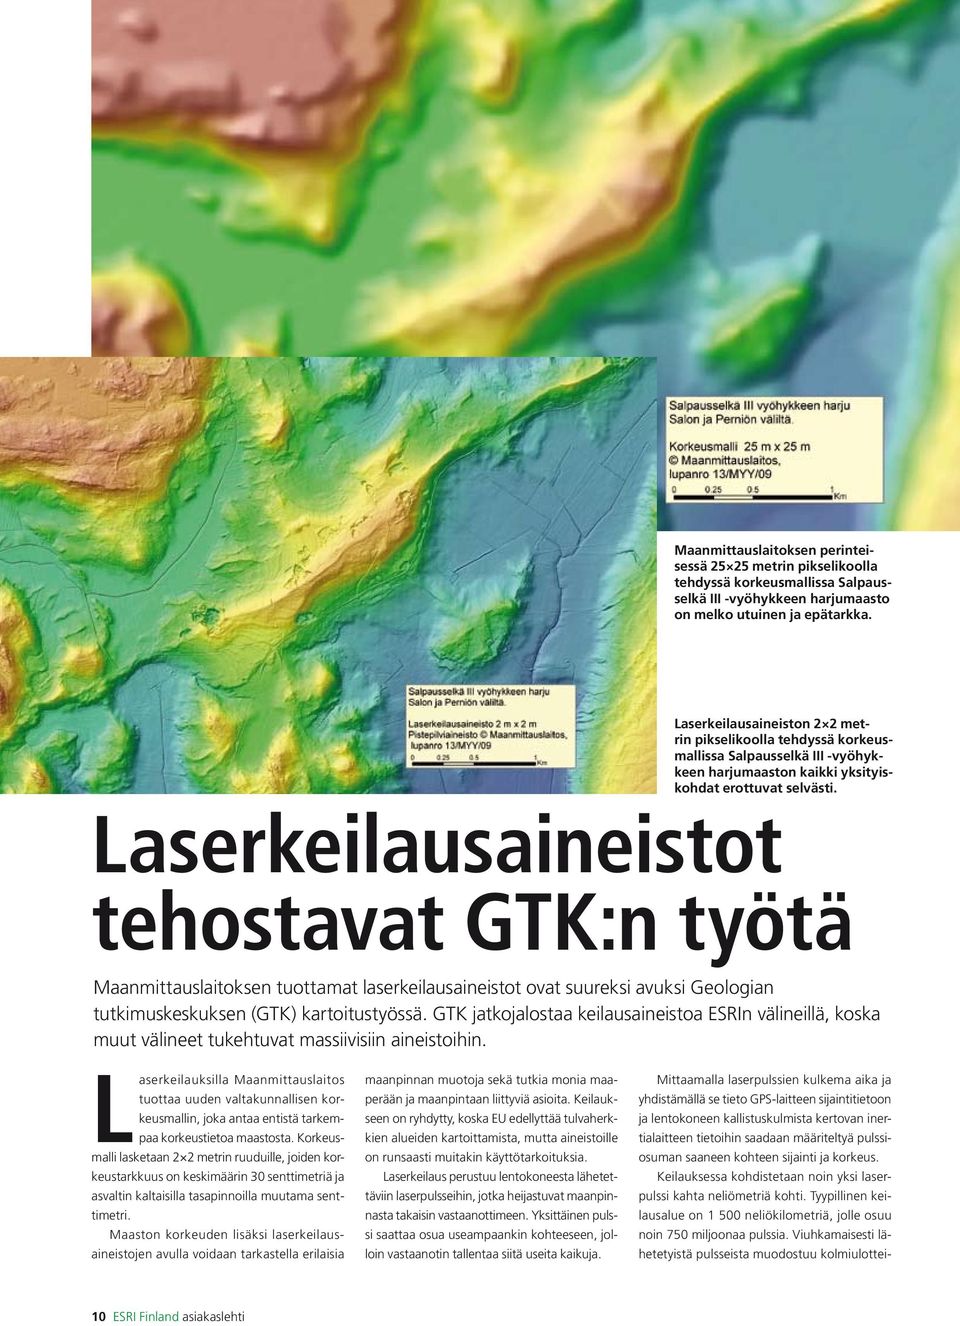 Laserkeilausaineistot tehostavat GTK:n työtä Maanmittauslaitoksen tuottamat laserkeilausaineistot ovat suureksi avuksi Geologian tutkimuskeskuksen (GTK) kartoitustyössä.